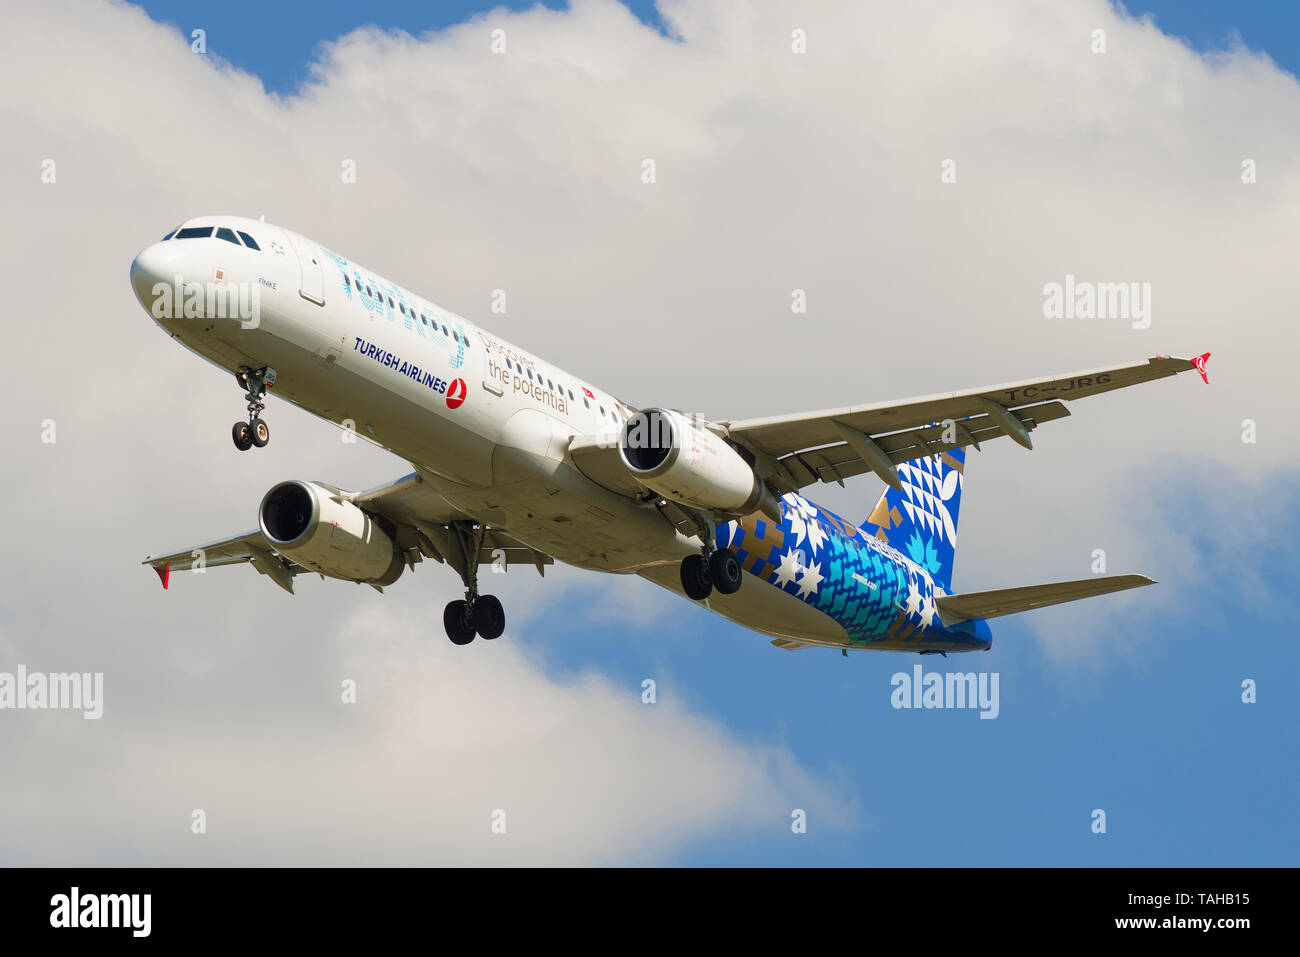 SAINT-Petersburg, Russland - 13. MAI 2019: Airbus A 321-200 (TC-JRG) der Turkish Airlines gegen einen bewölkten Himmel Stockfoto